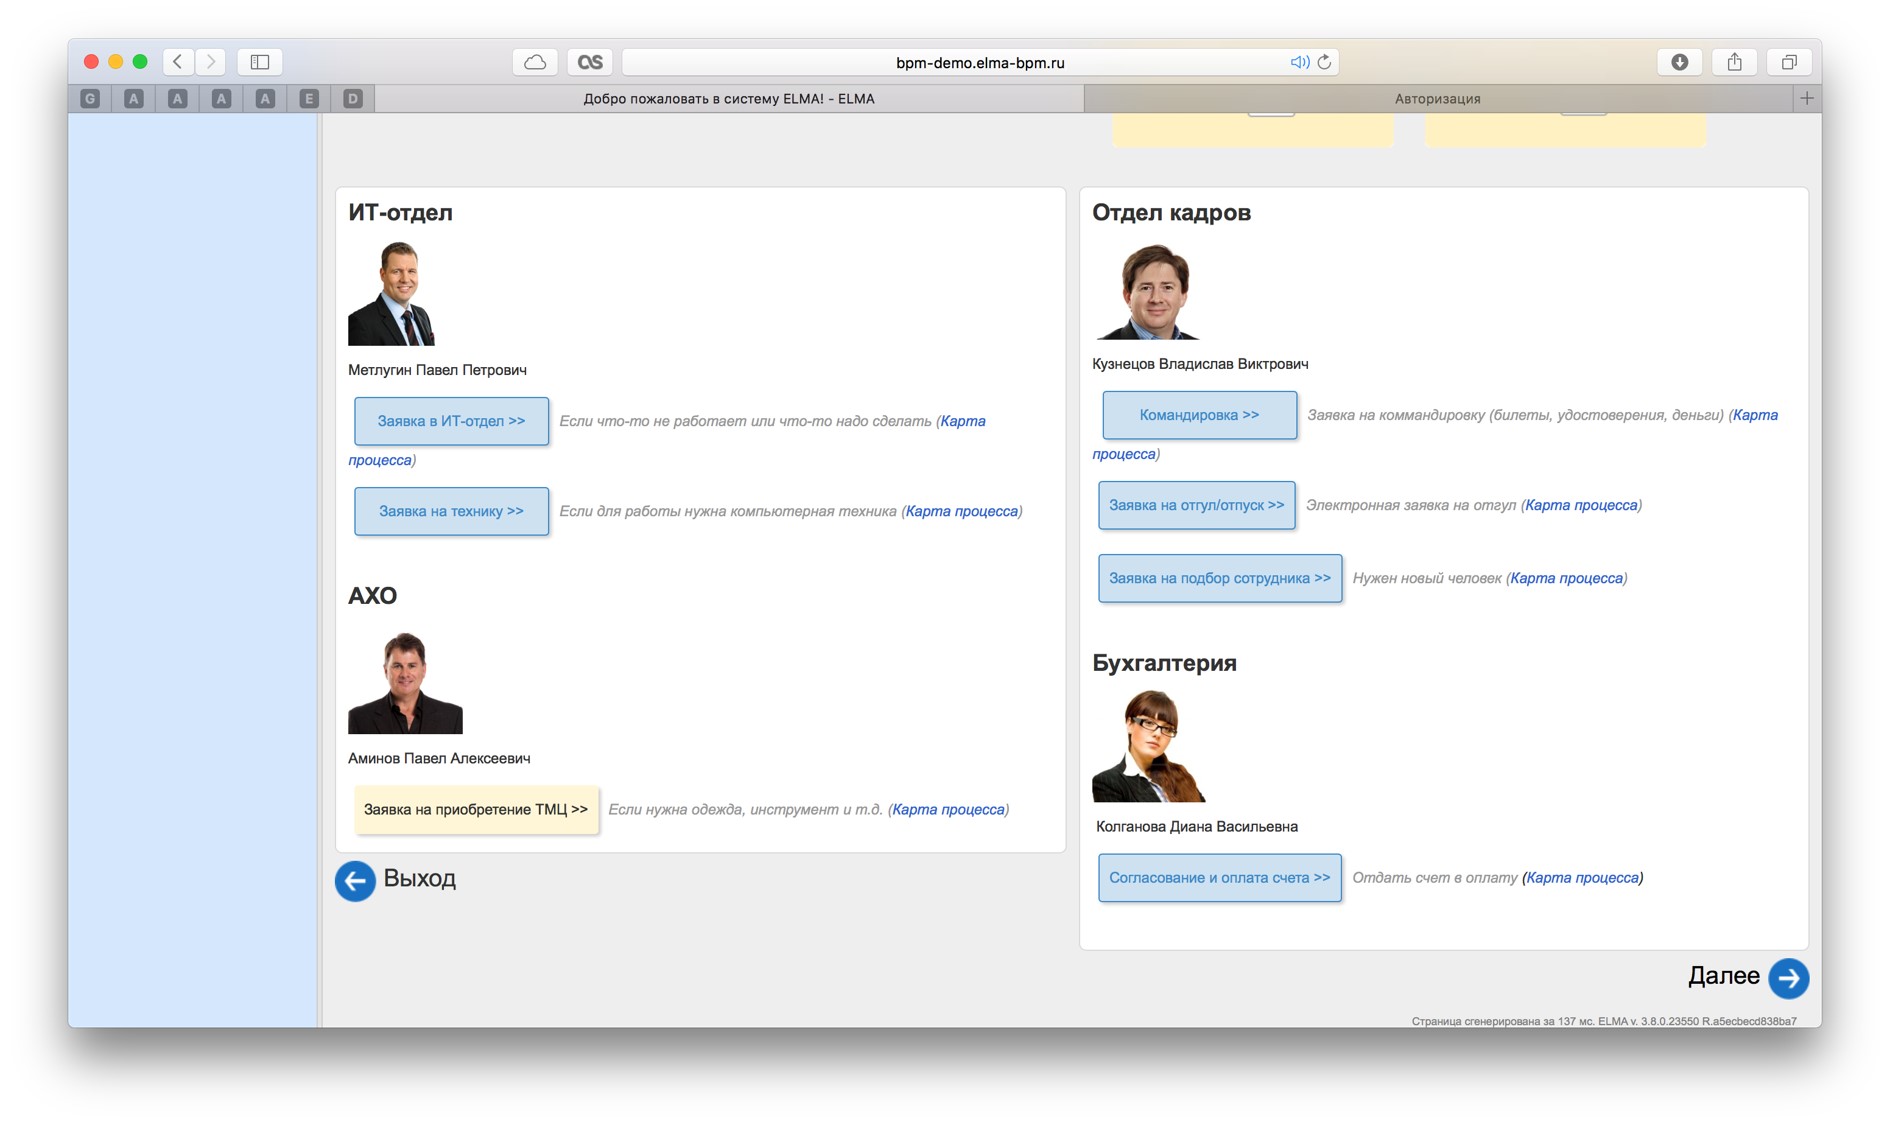 Пример веб-интерфейса ELMA BPM, в котором сотрудник может выбрать и запустить в работу нужный автоматизированный бизнес-процесс